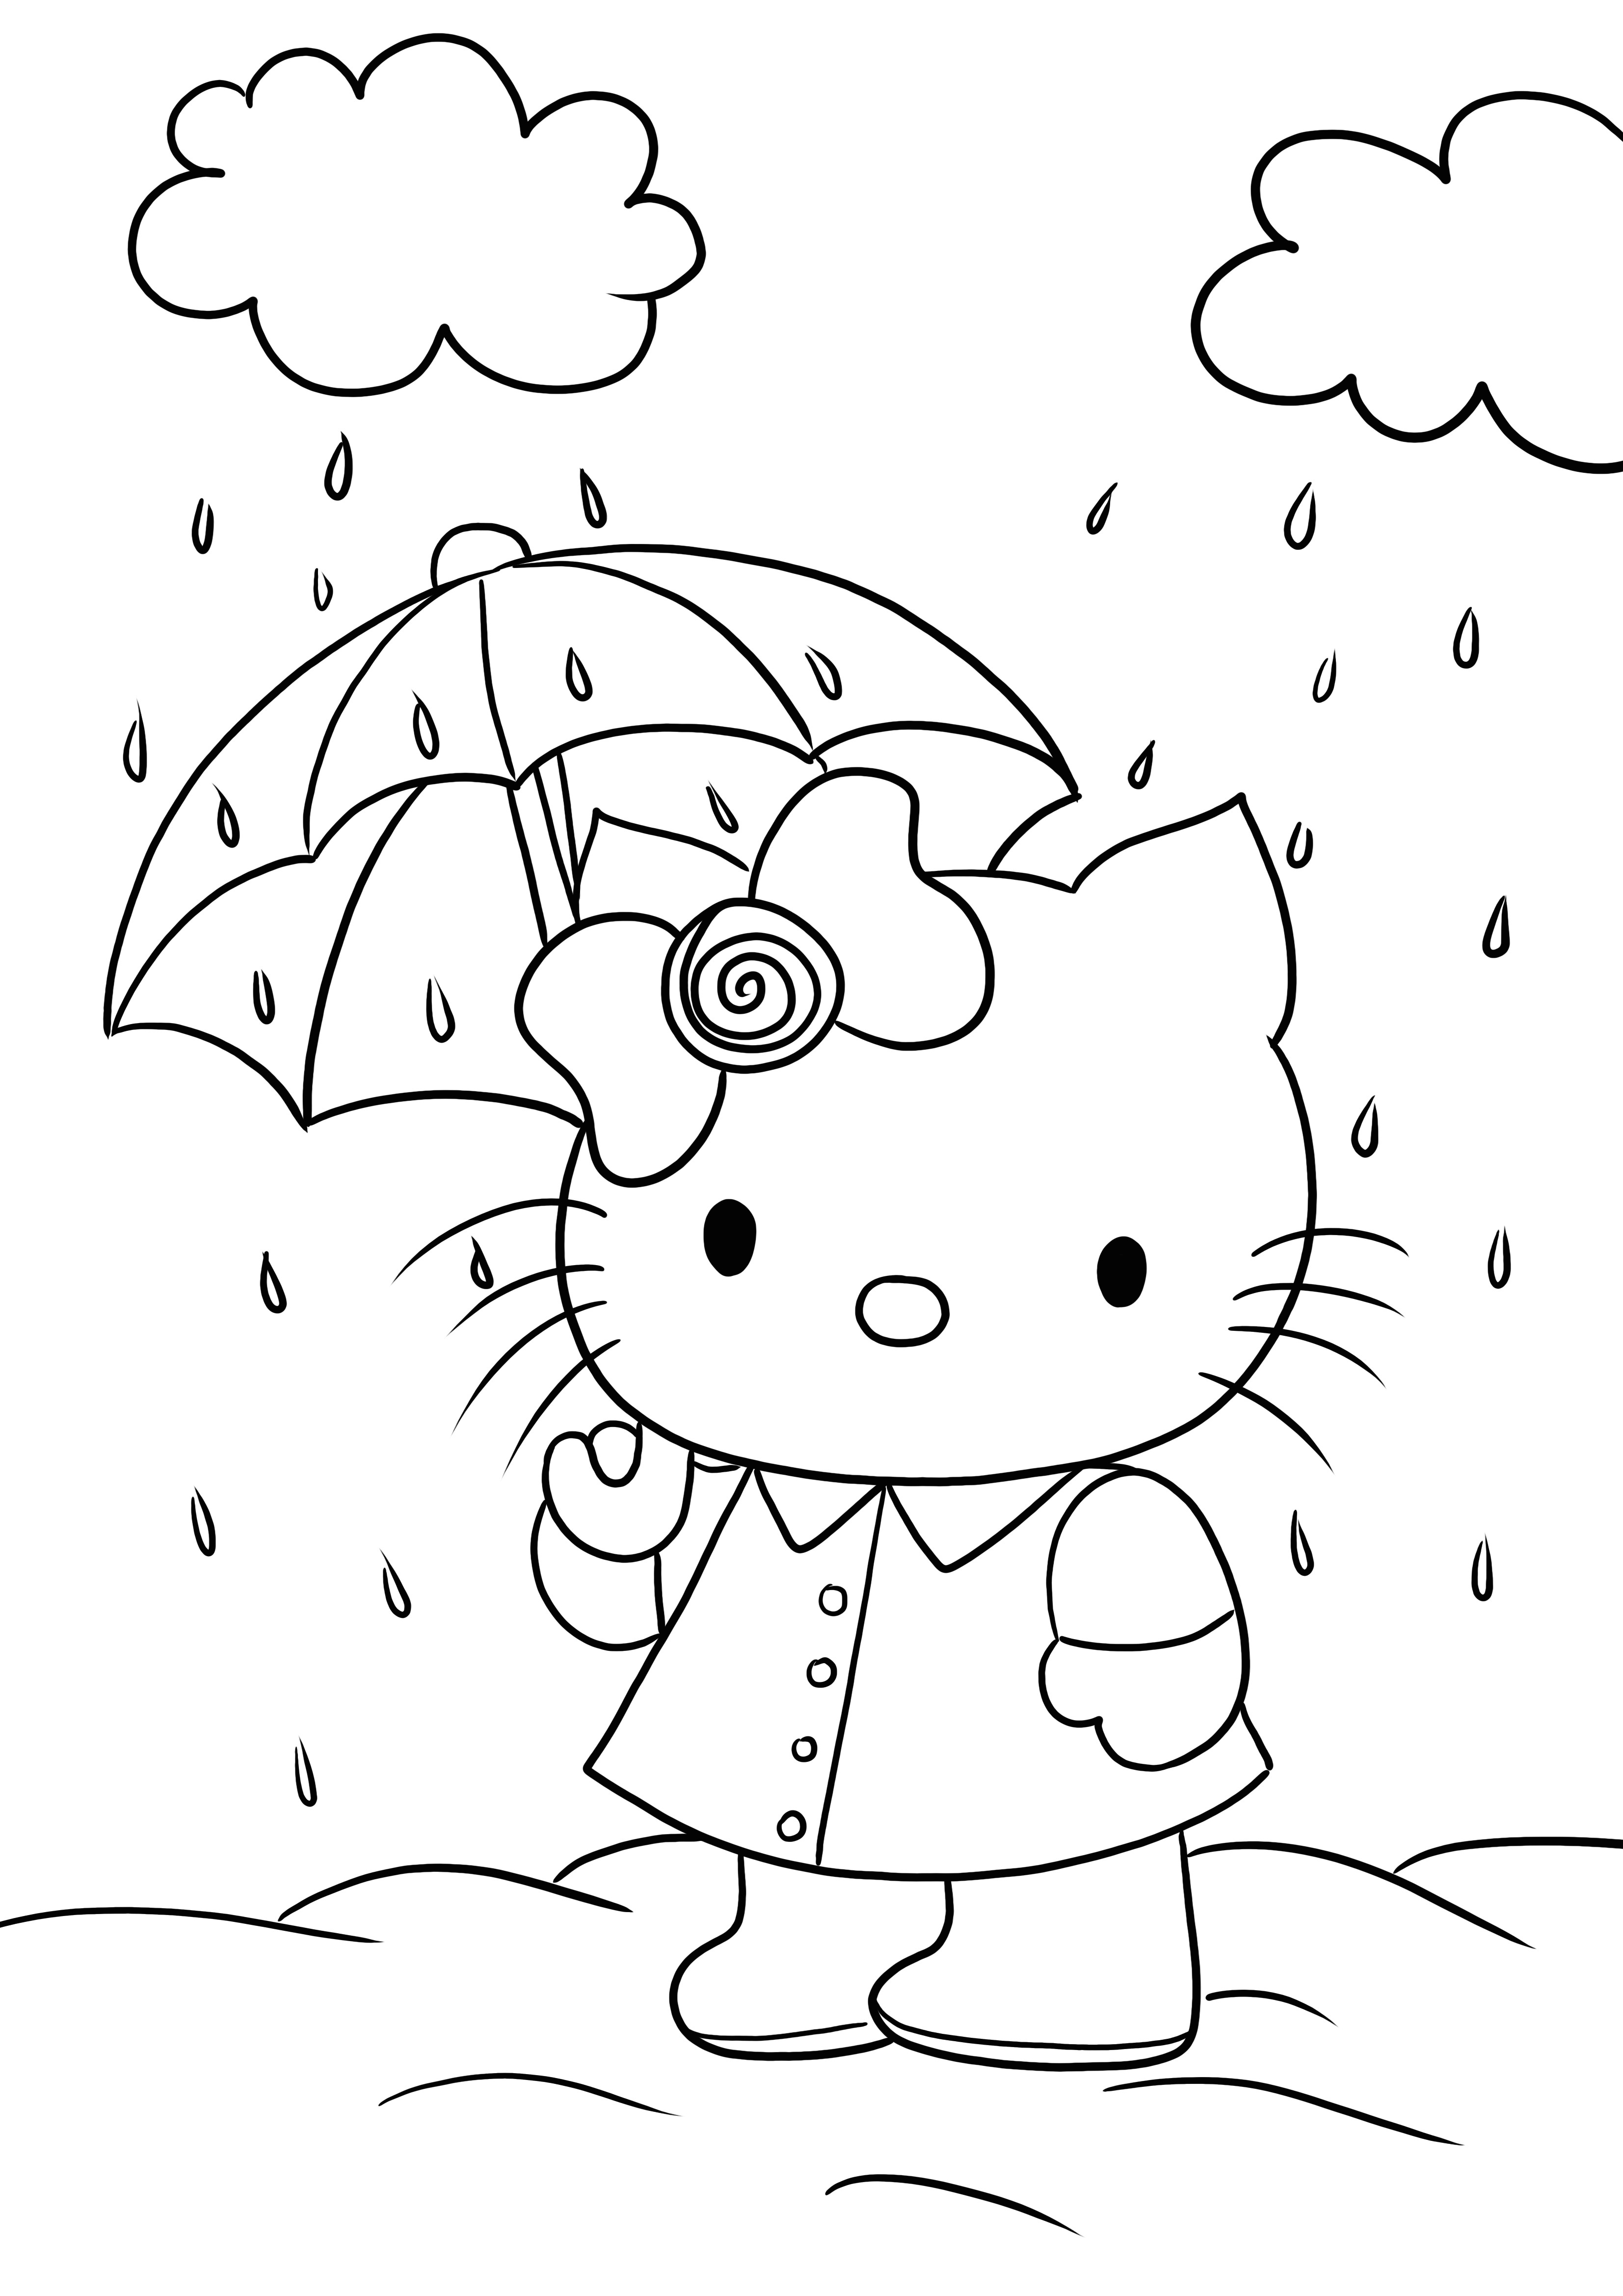 Hello Kitty está sob o guarda-chuva pronta para imprimir e colorir a imagem